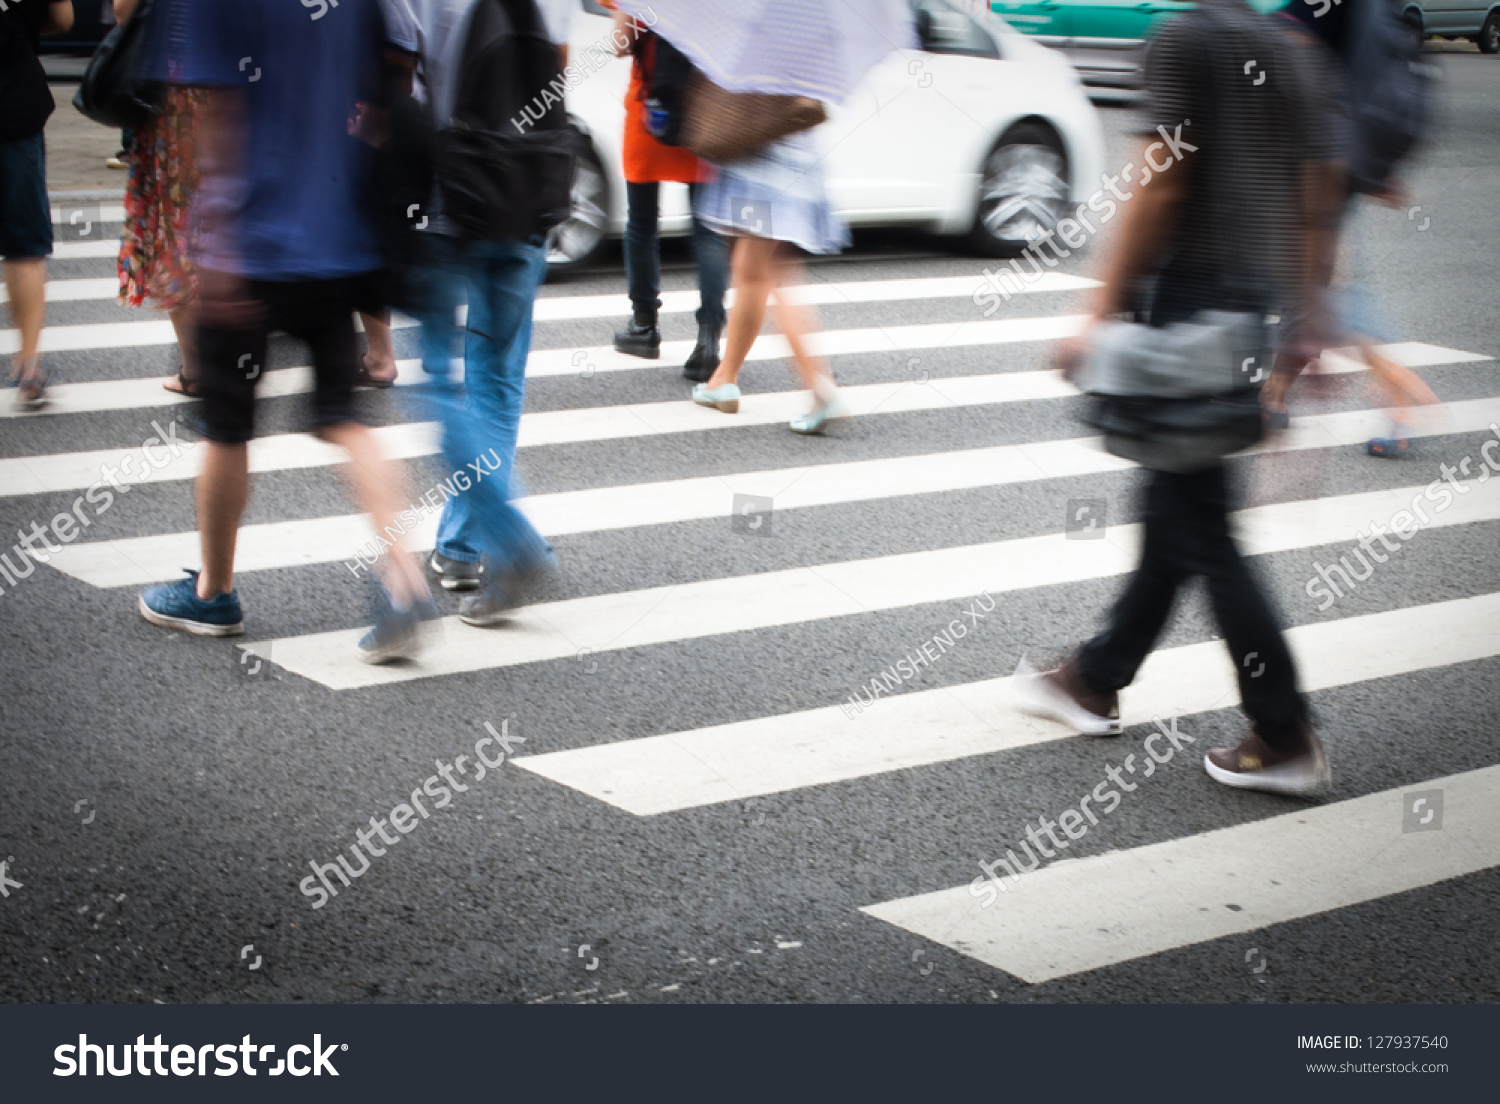 Busy city street people on zebra crossing #127937540